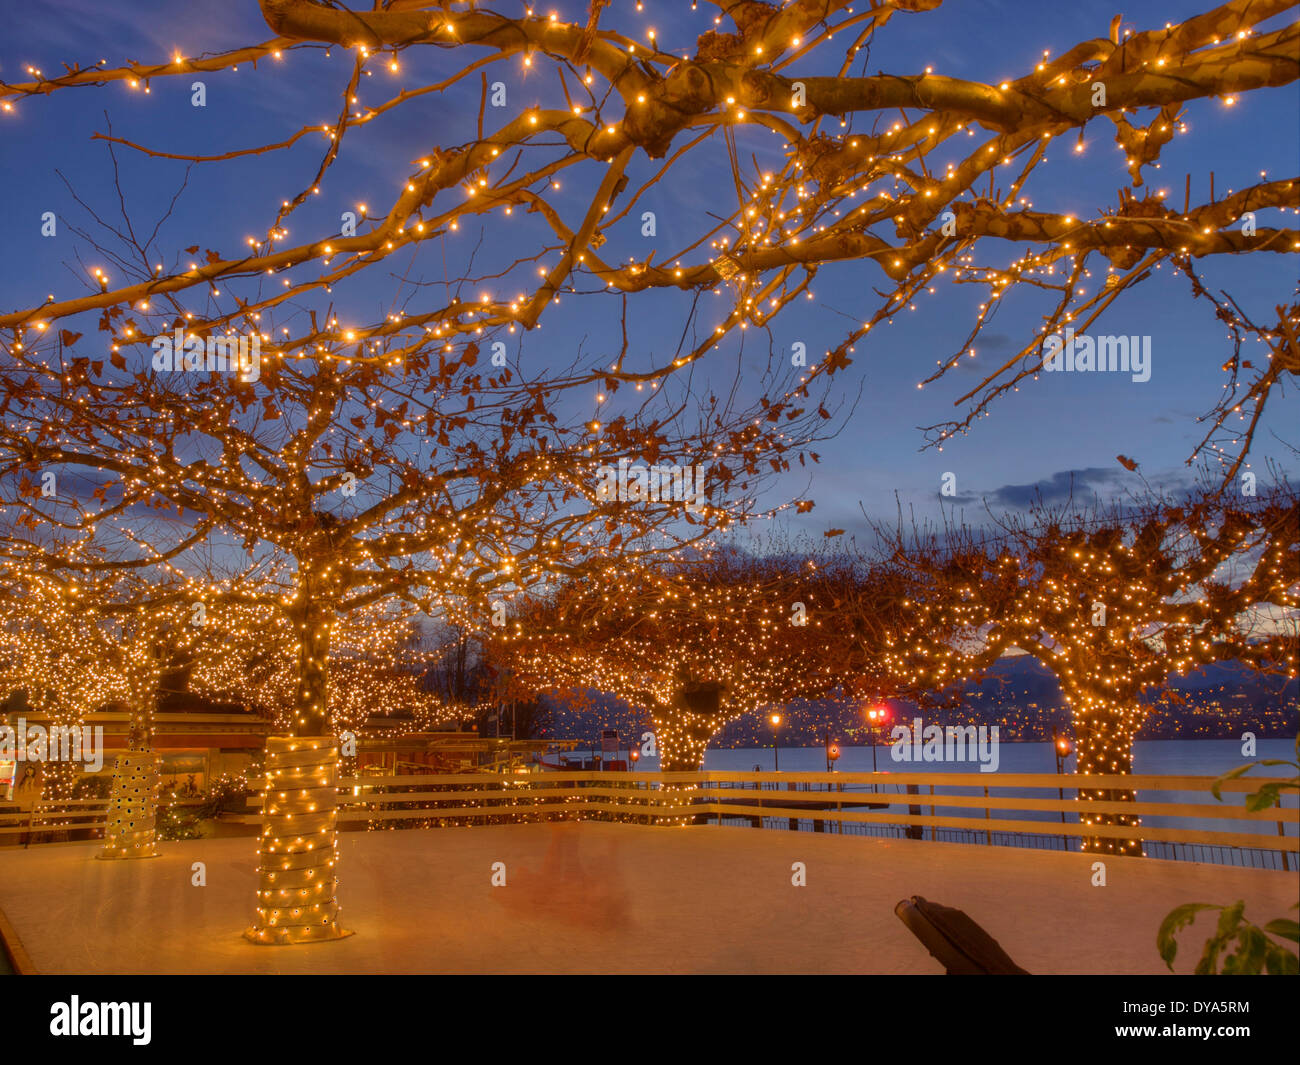 Europa, Schweiz, Kanton Zürich, Abend, künstliche, ice Rink, Küsnacht,  Beleuchtung, Weihnachten, Weihnachtsbeleuchtung Stockfotografie - Alamy